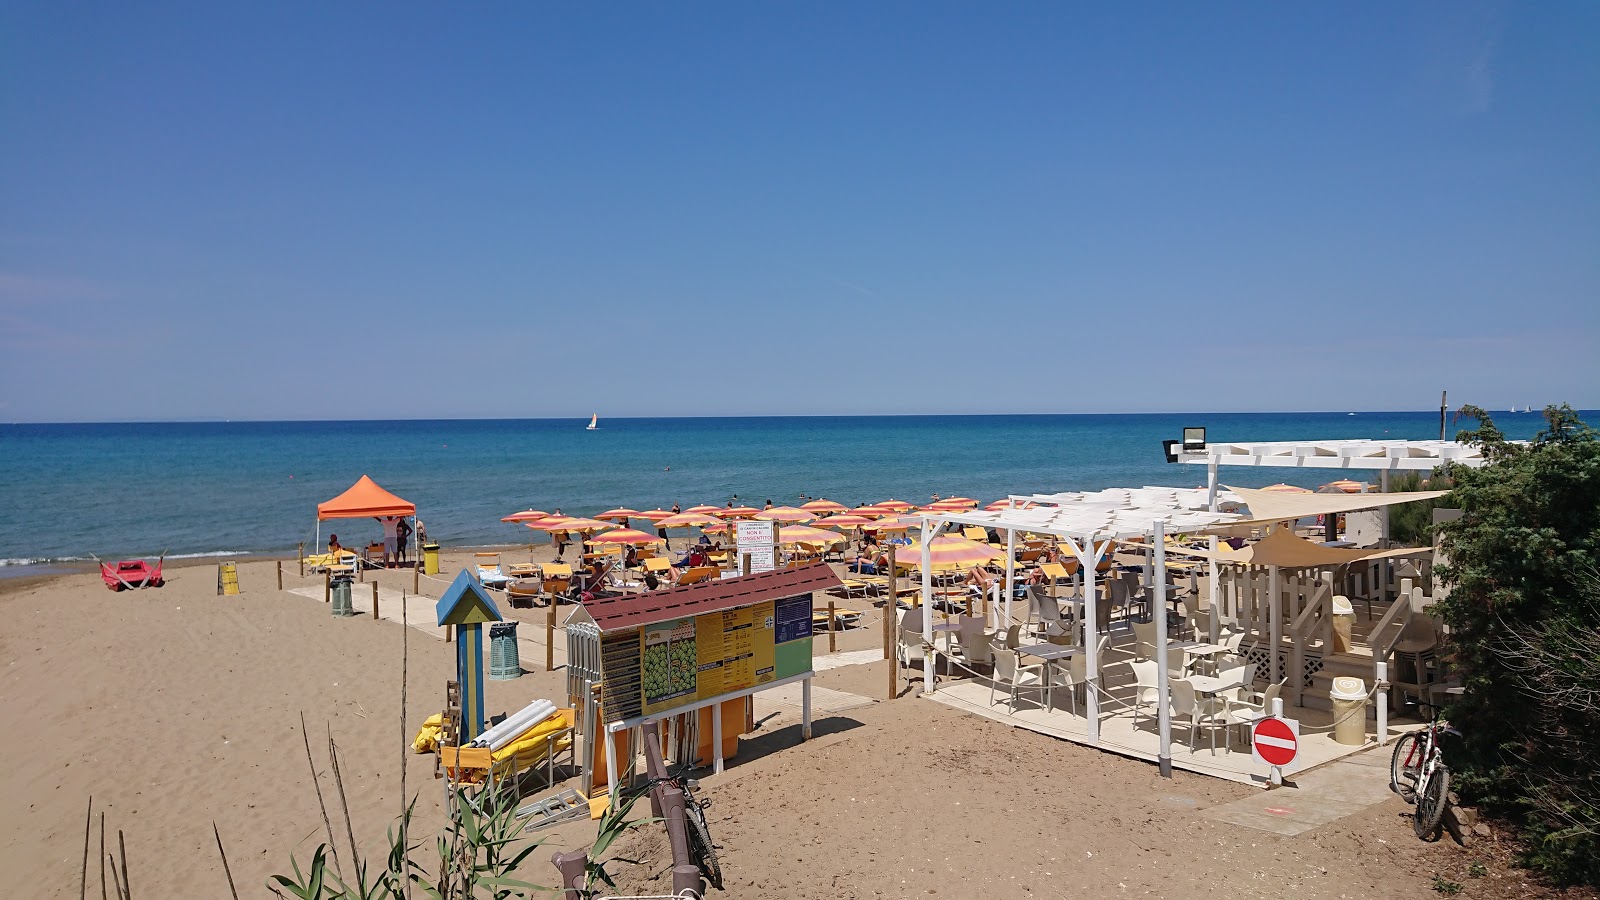 Fotografija Spiaggia di Rimigliano nahaja se v naravnem okolju